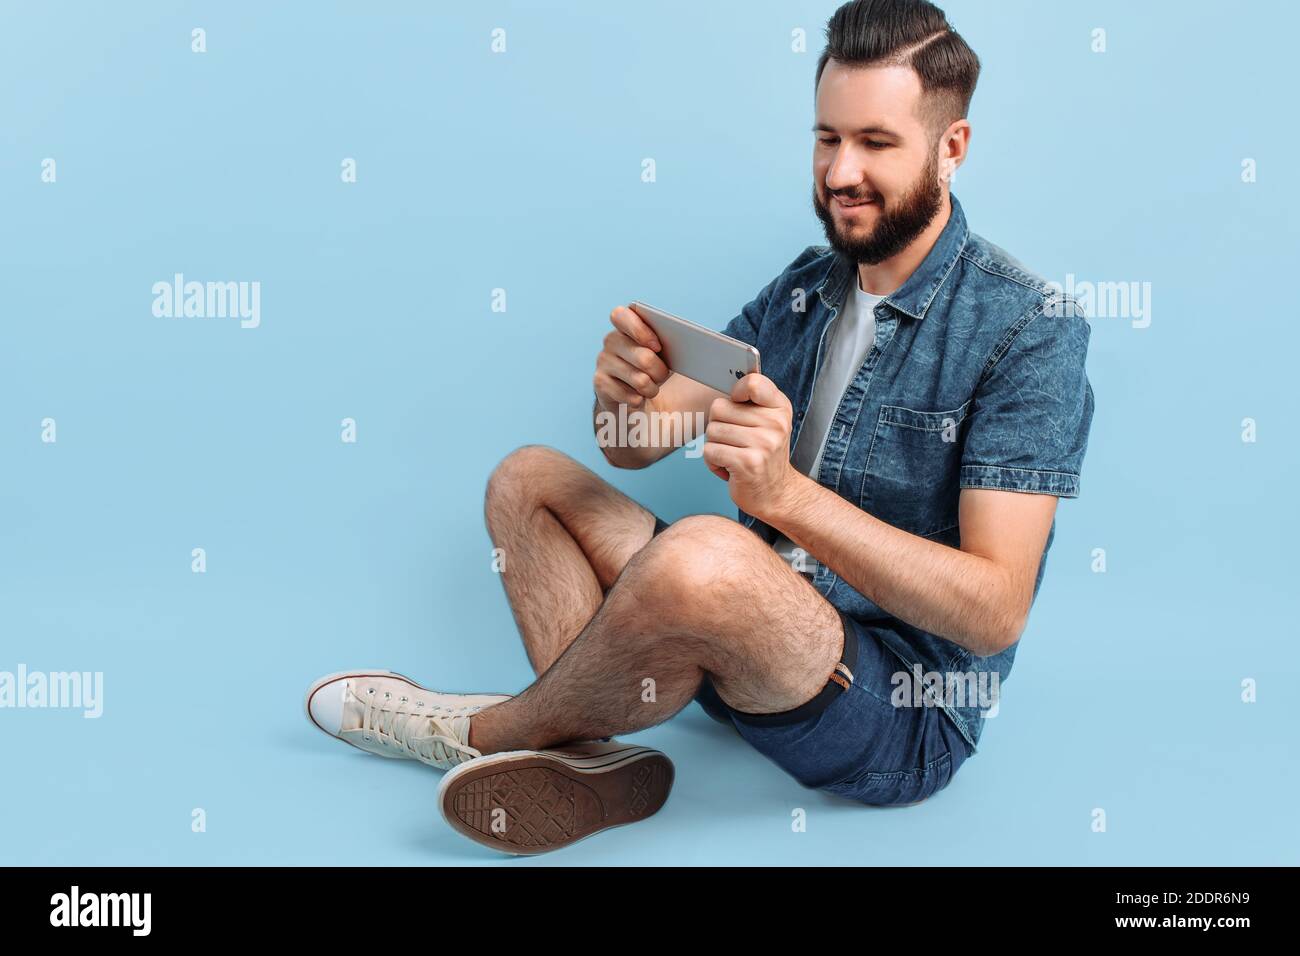 Un uomo con un'elegante bearded, in abiti casual, tiene uno smartphone nelle mani e guarda lo schermo del telefono seduto su uno sfondo blu Foto Stock